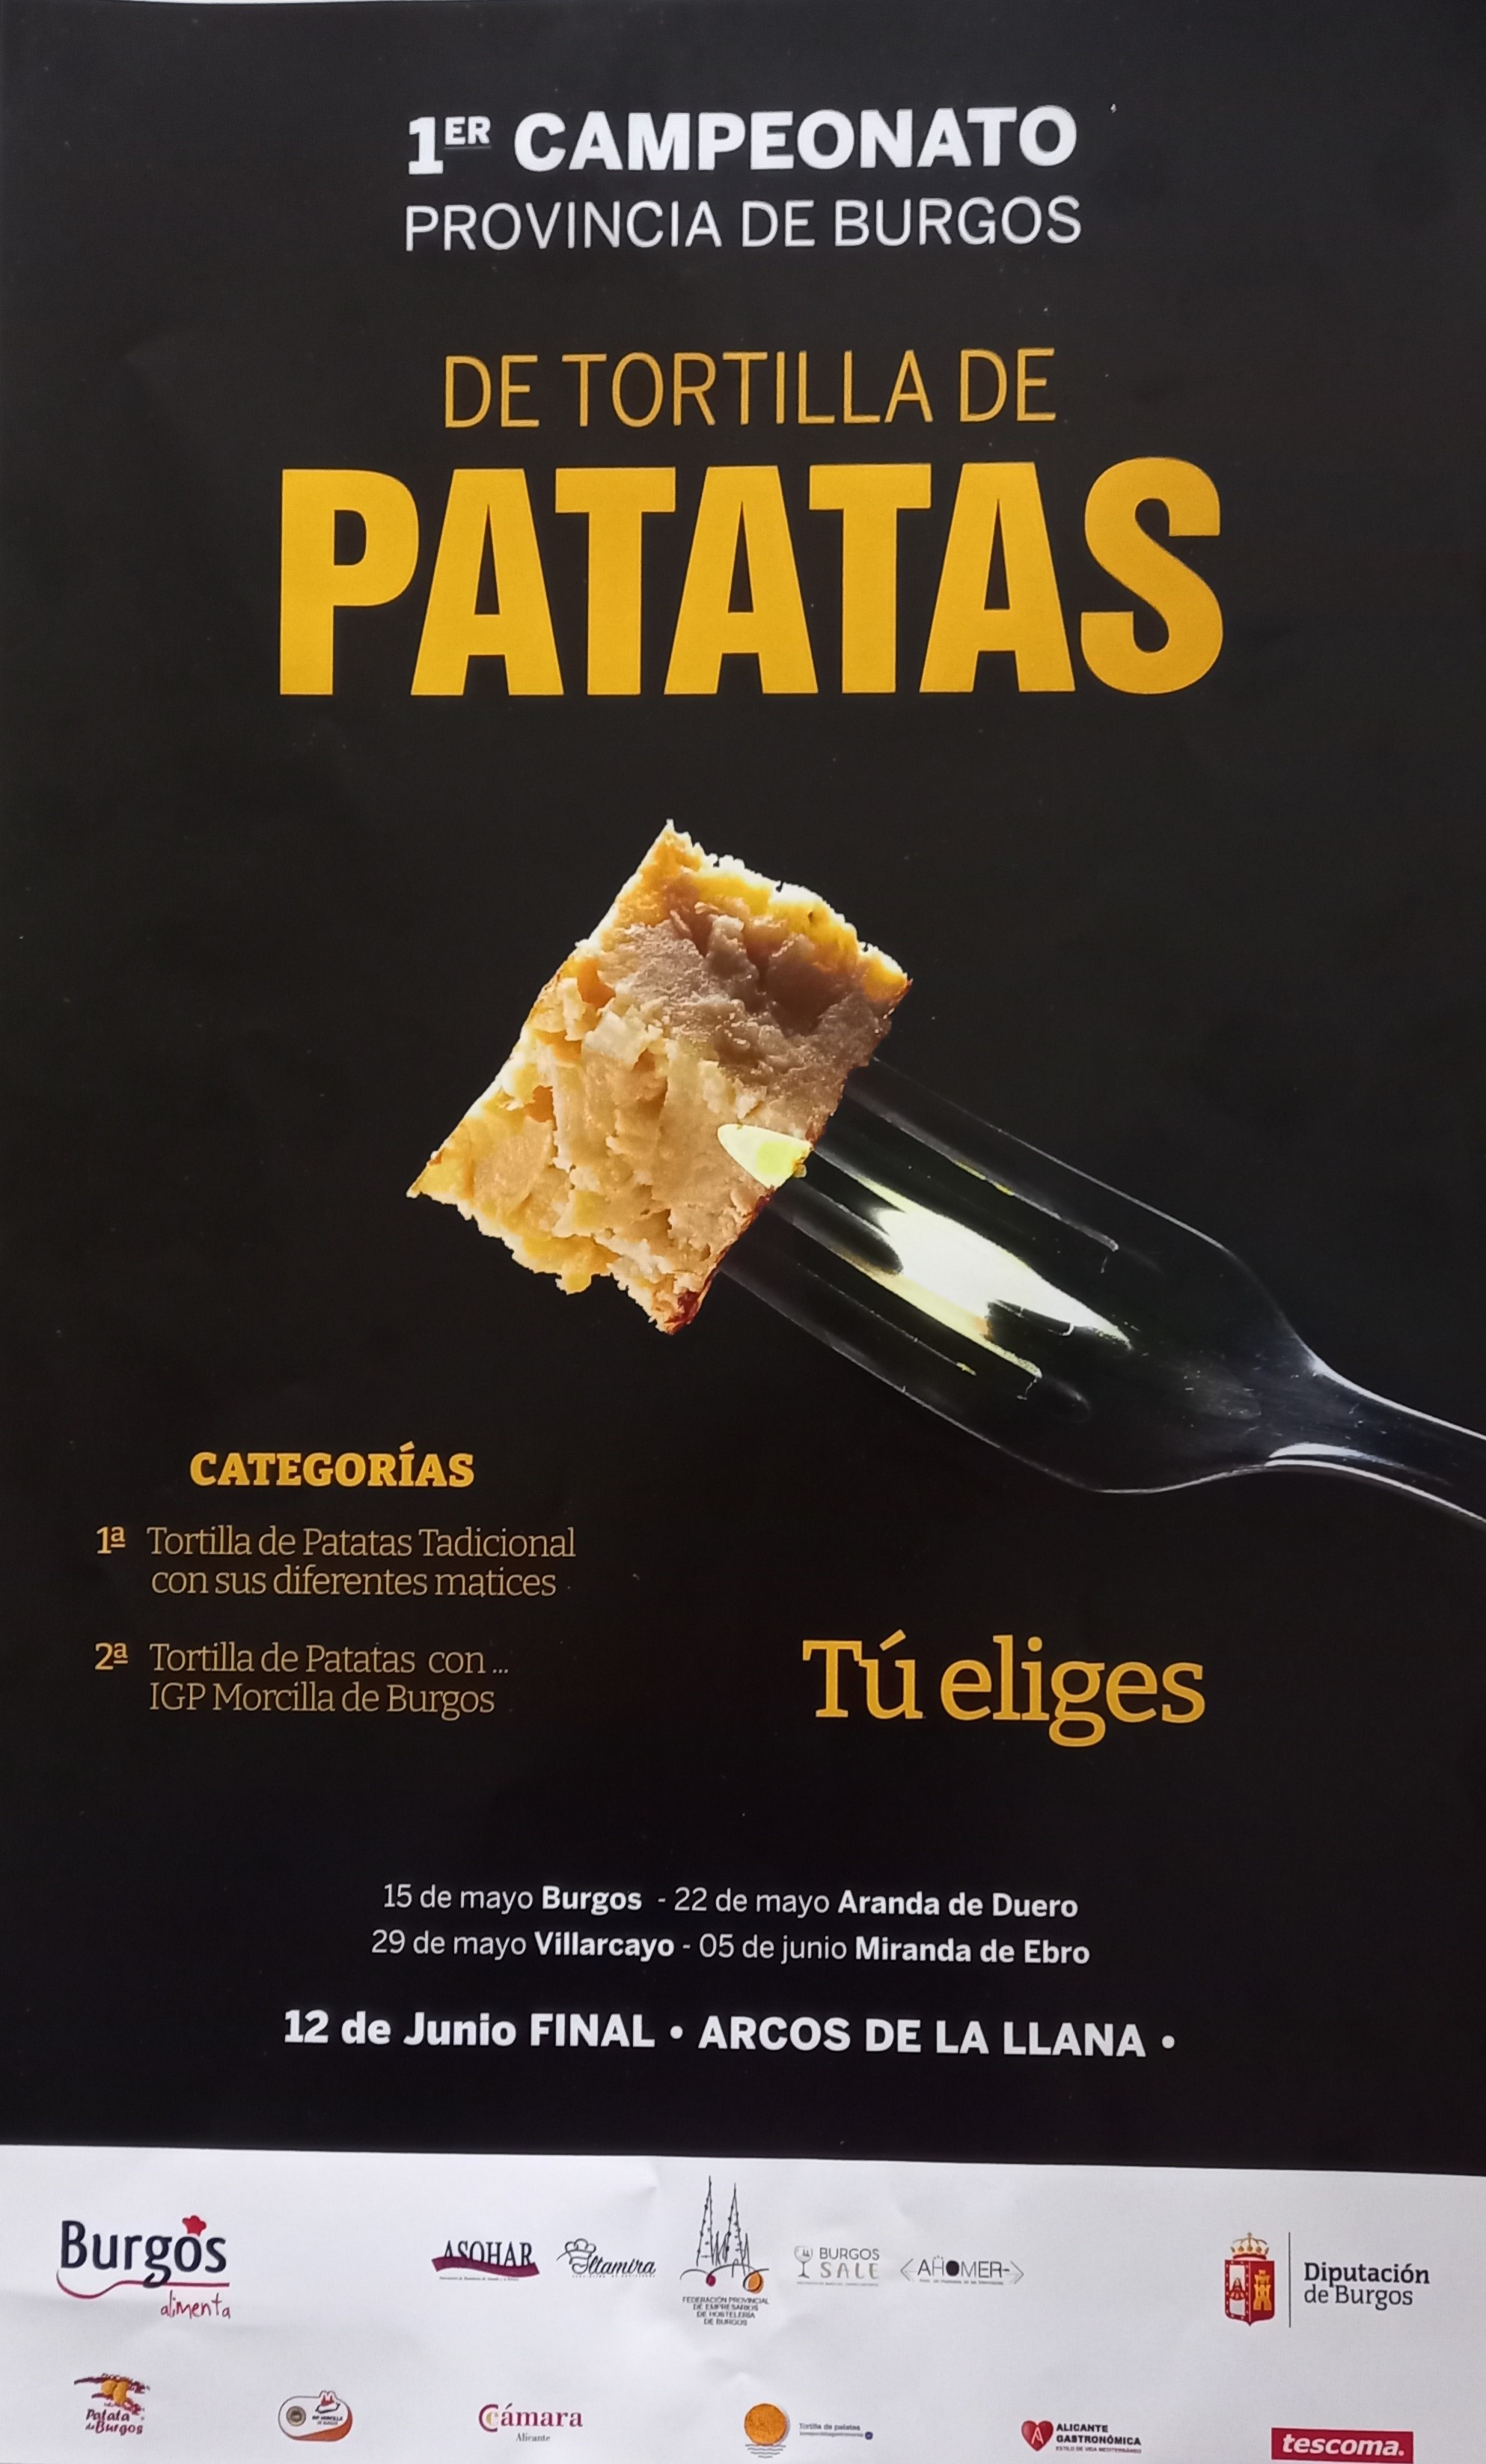 Imágen del ecento: 1er CAMPEONATO DE TORTILLA DE PATATAS en Burgos y Provincia